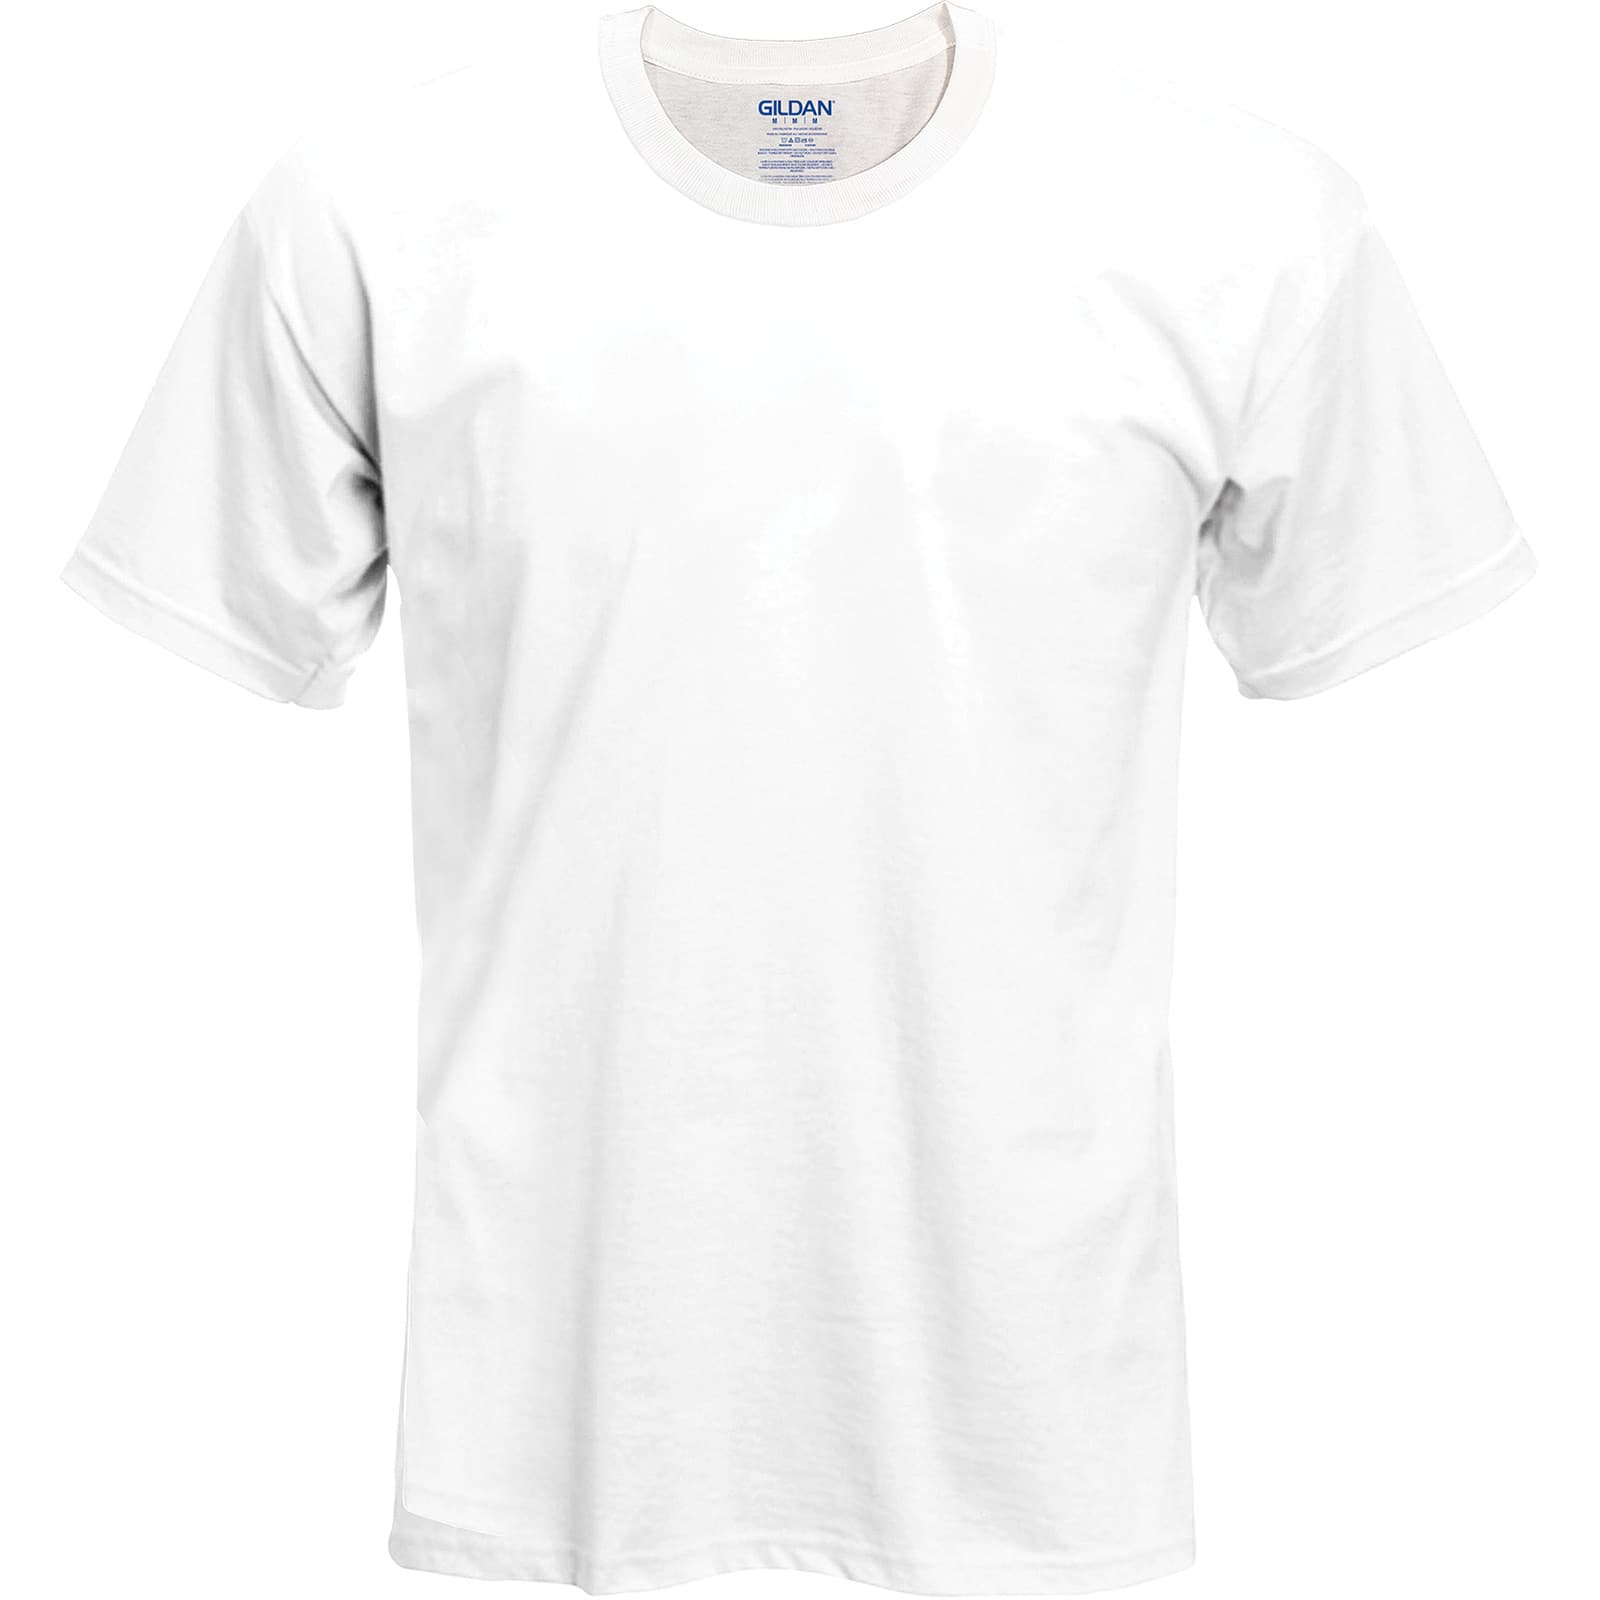 michaels white tshirt